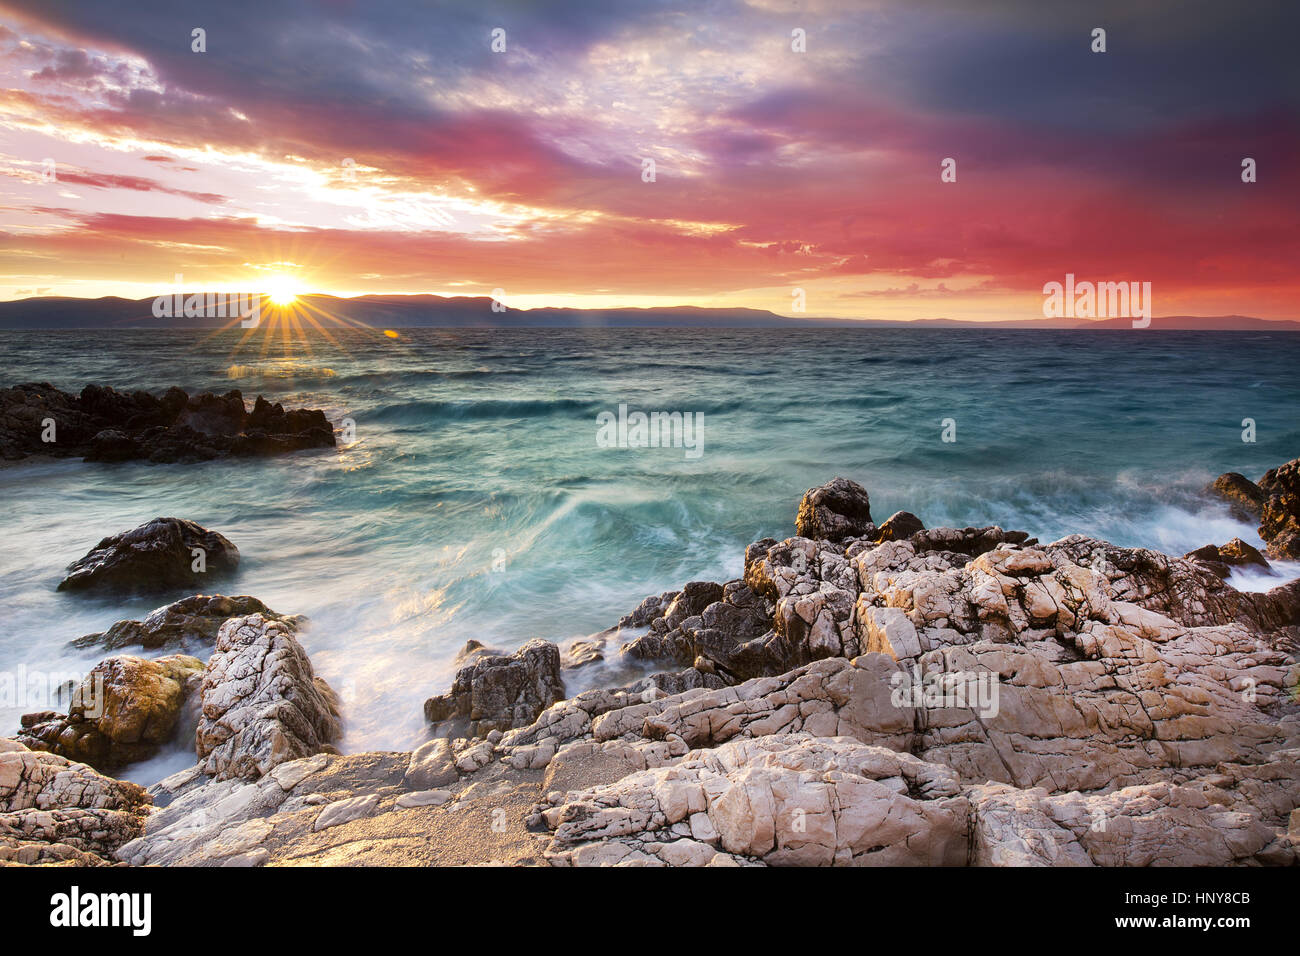 Sunrise oltre la spiaggia rocciosa sulla costa del Mare Adriatico, Istria, Croazia Foto Stock